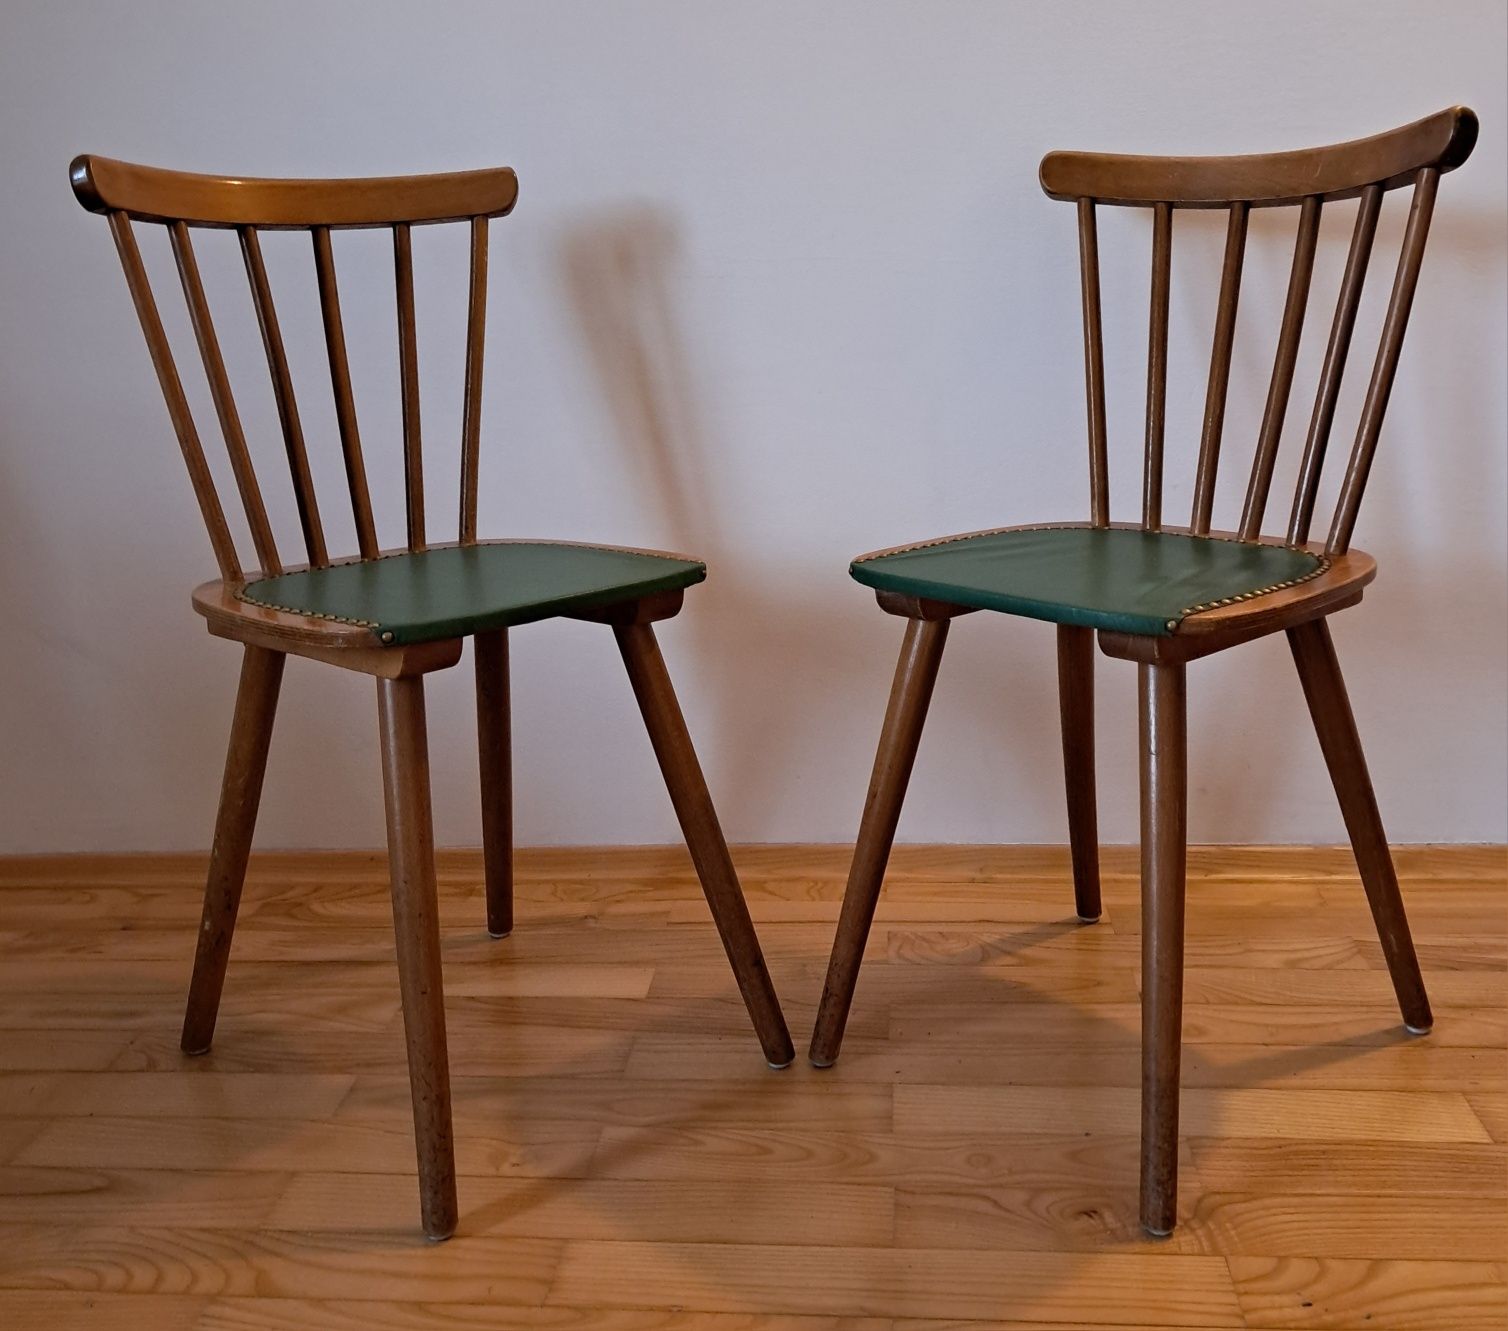 krzesło patyczak krzesła PATYCZAKI krzesło vintage krzesła drewniane